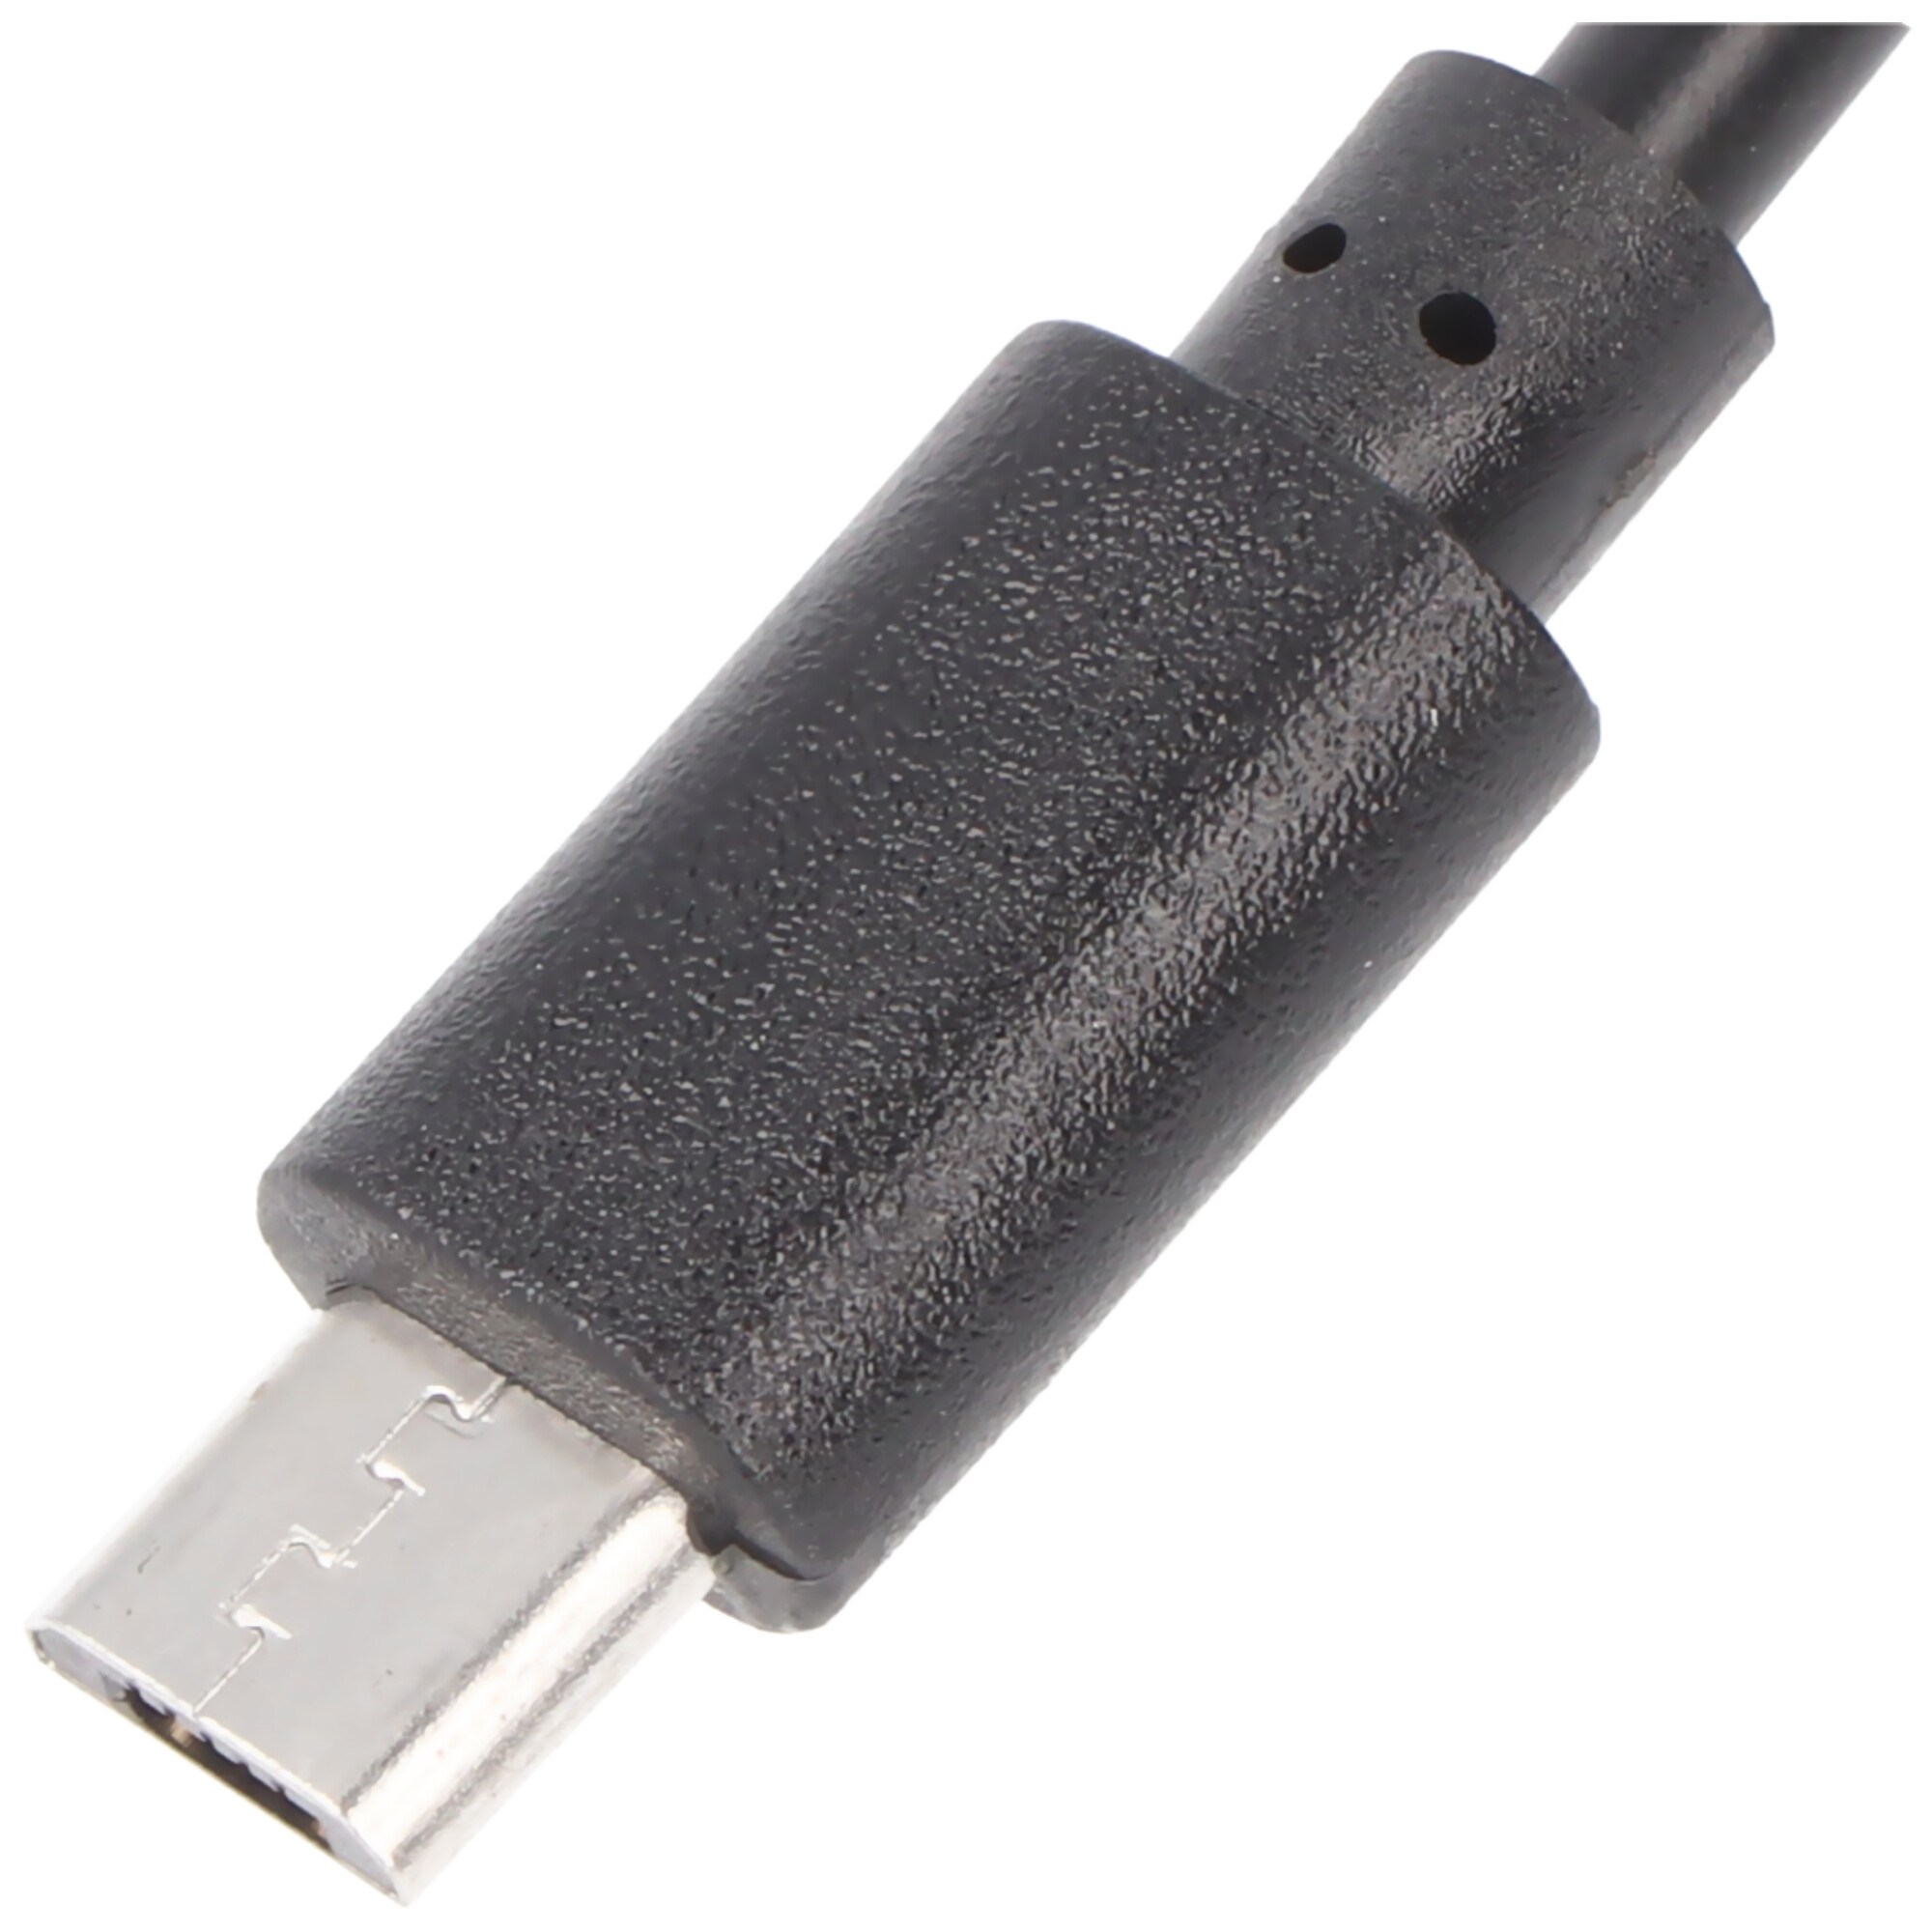 Schnell-Ladegerät für Samsung Galaxy S7 / S7 Edge mit Micro-USB Stecker 2A Ladestrom